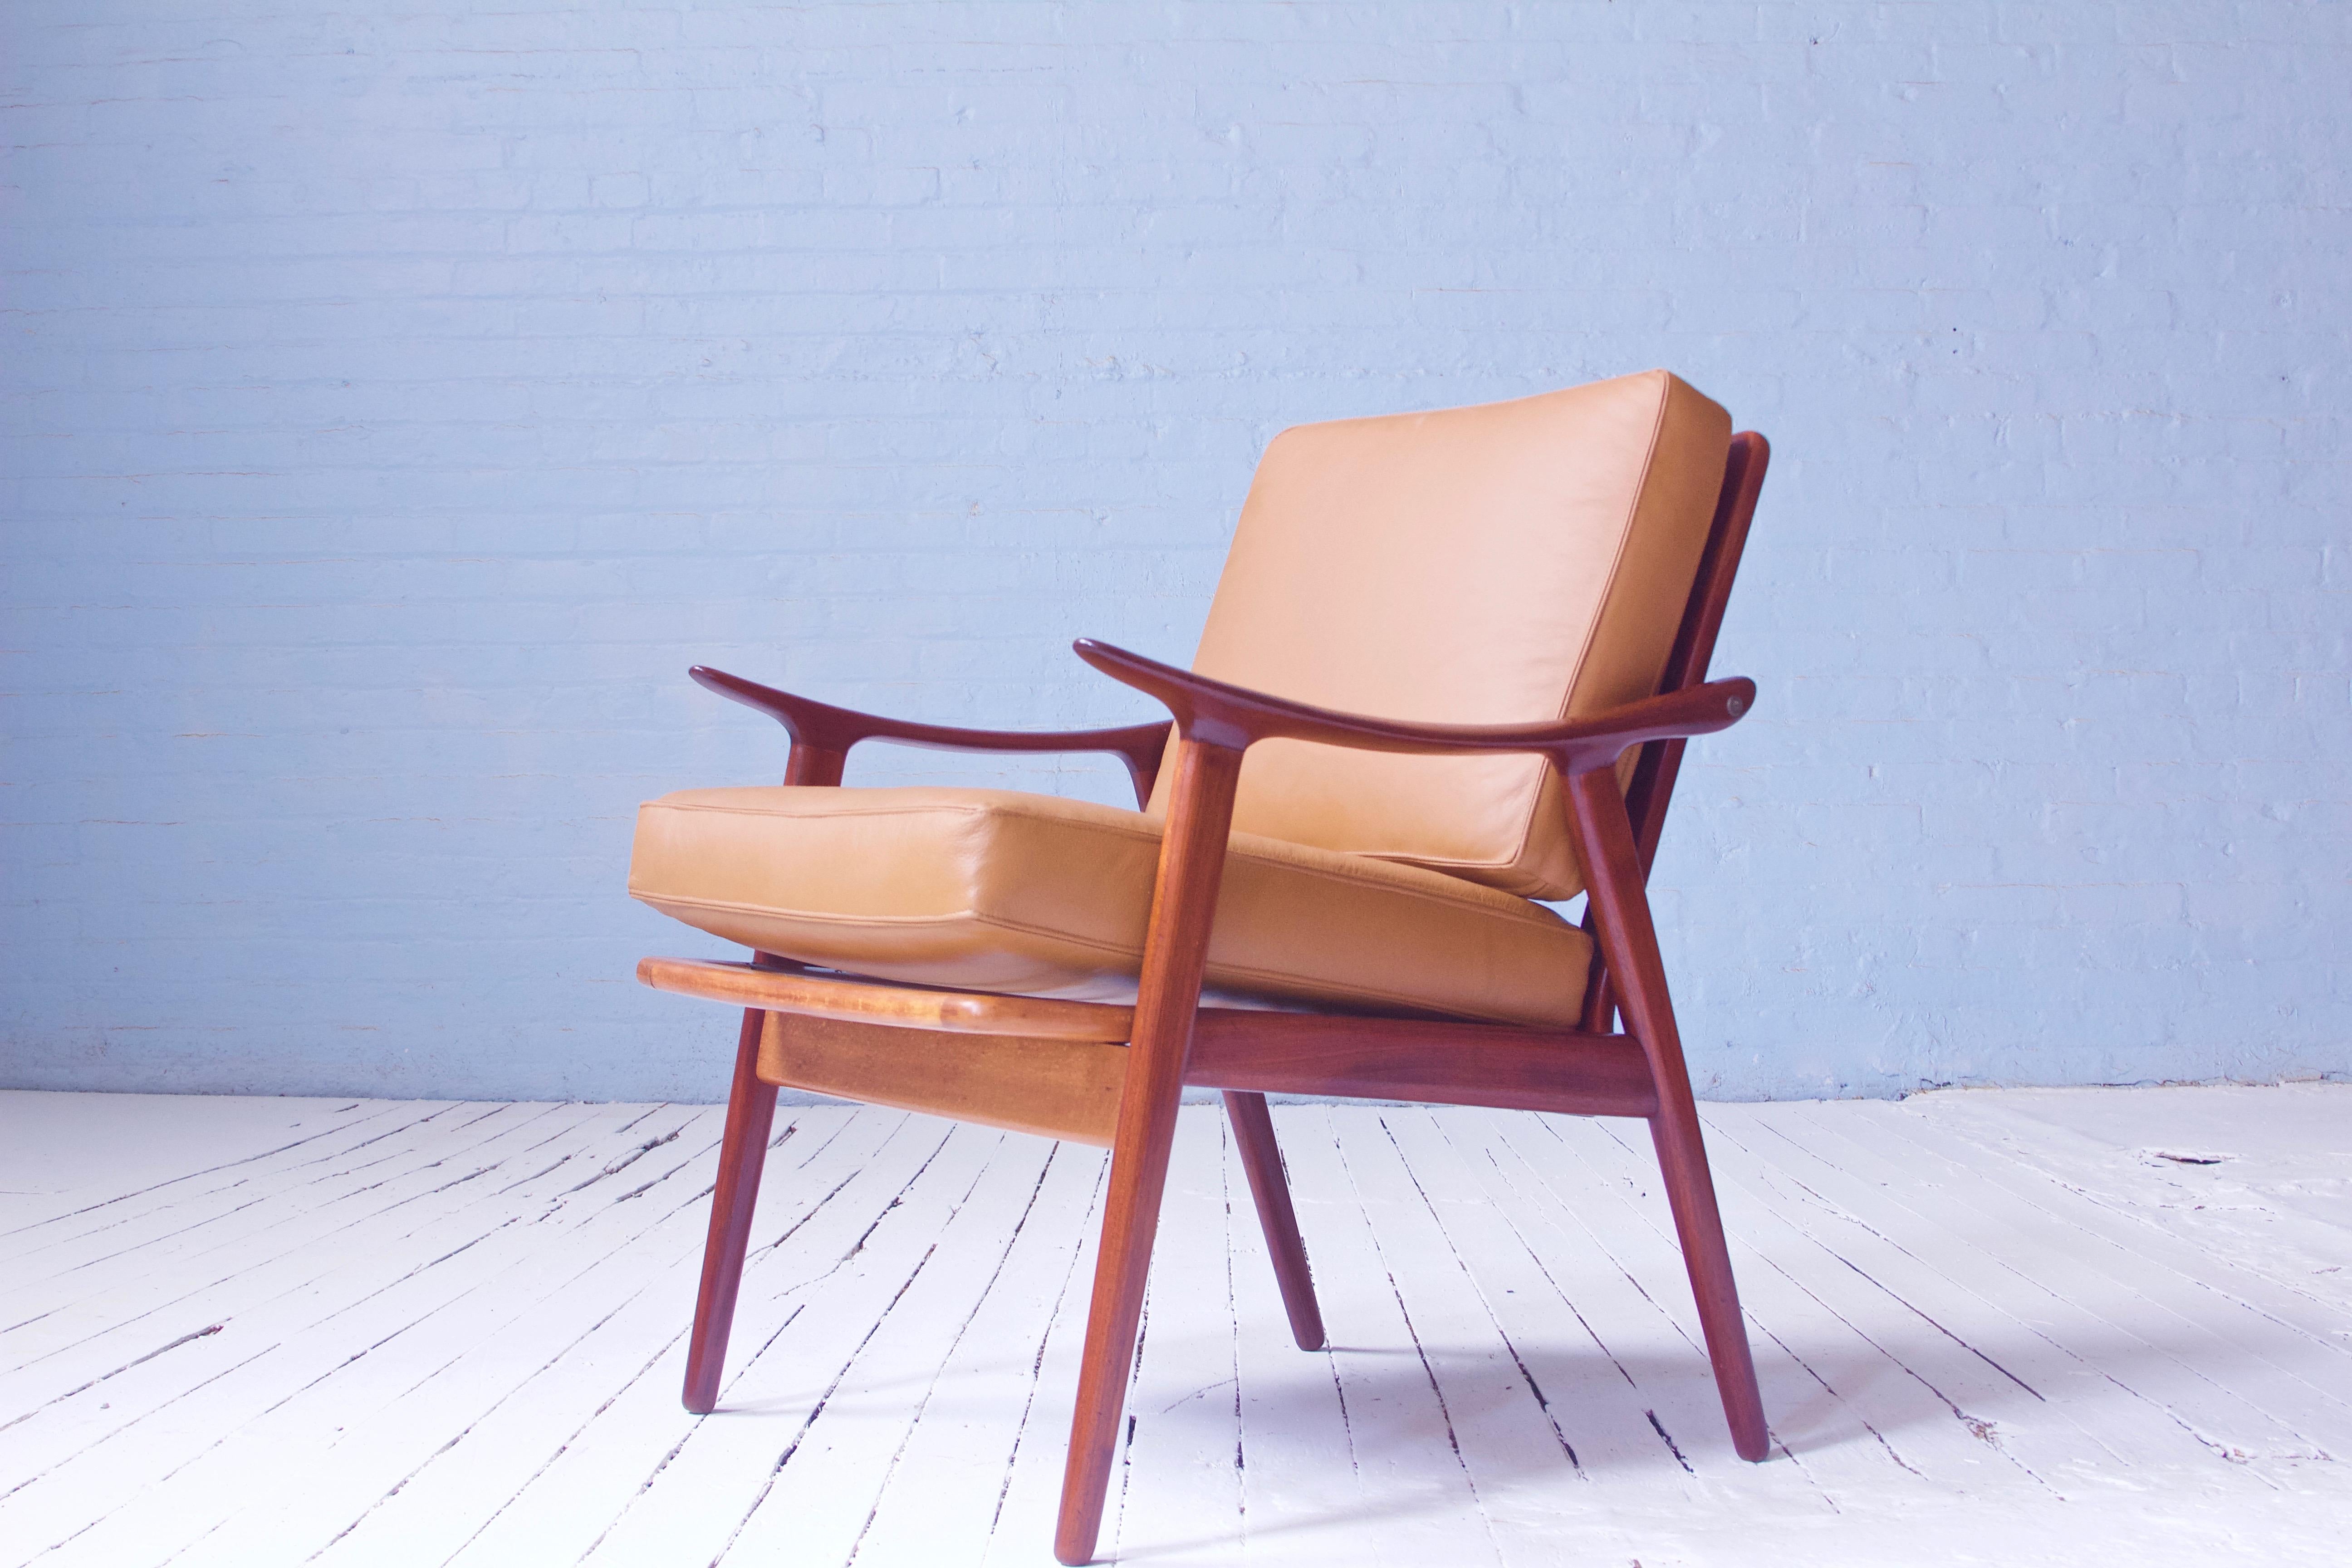 Une chaise longue compacte brillamment conçue, en teck patiné sculpté à la main et tapissée de cuir cognac avec des coutures de type baseball, conçue par le designer industriel norvégien Fredrik A. Kayser, dans les années 1950. Ce cadre présente une